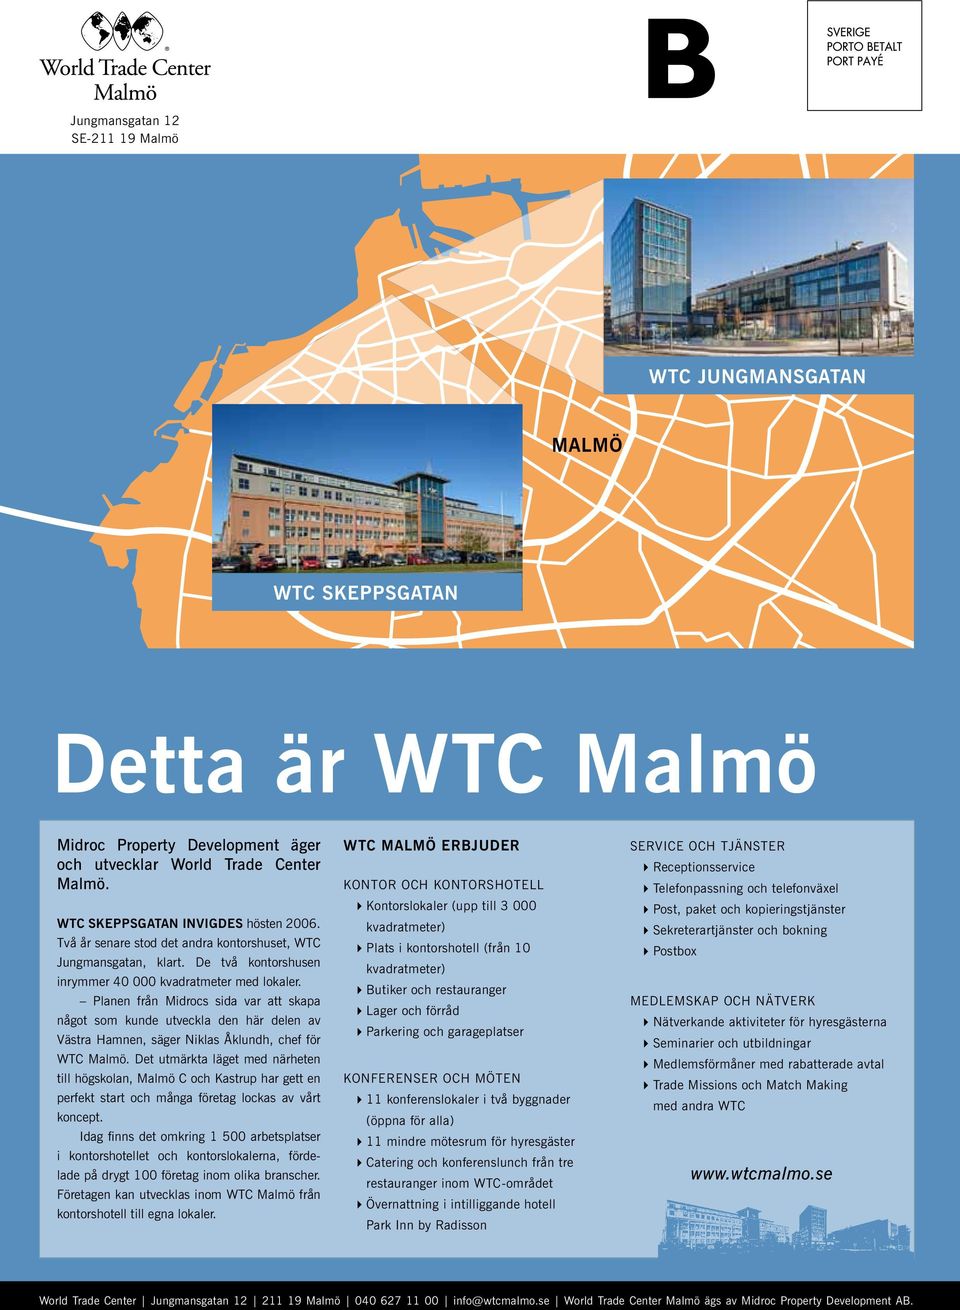 Planen från Midrocs sida var att skapa något som kunde utveckla den här delen av Västra Hamnen, säger Niklas Åklundh, chef för WTC Malmö.